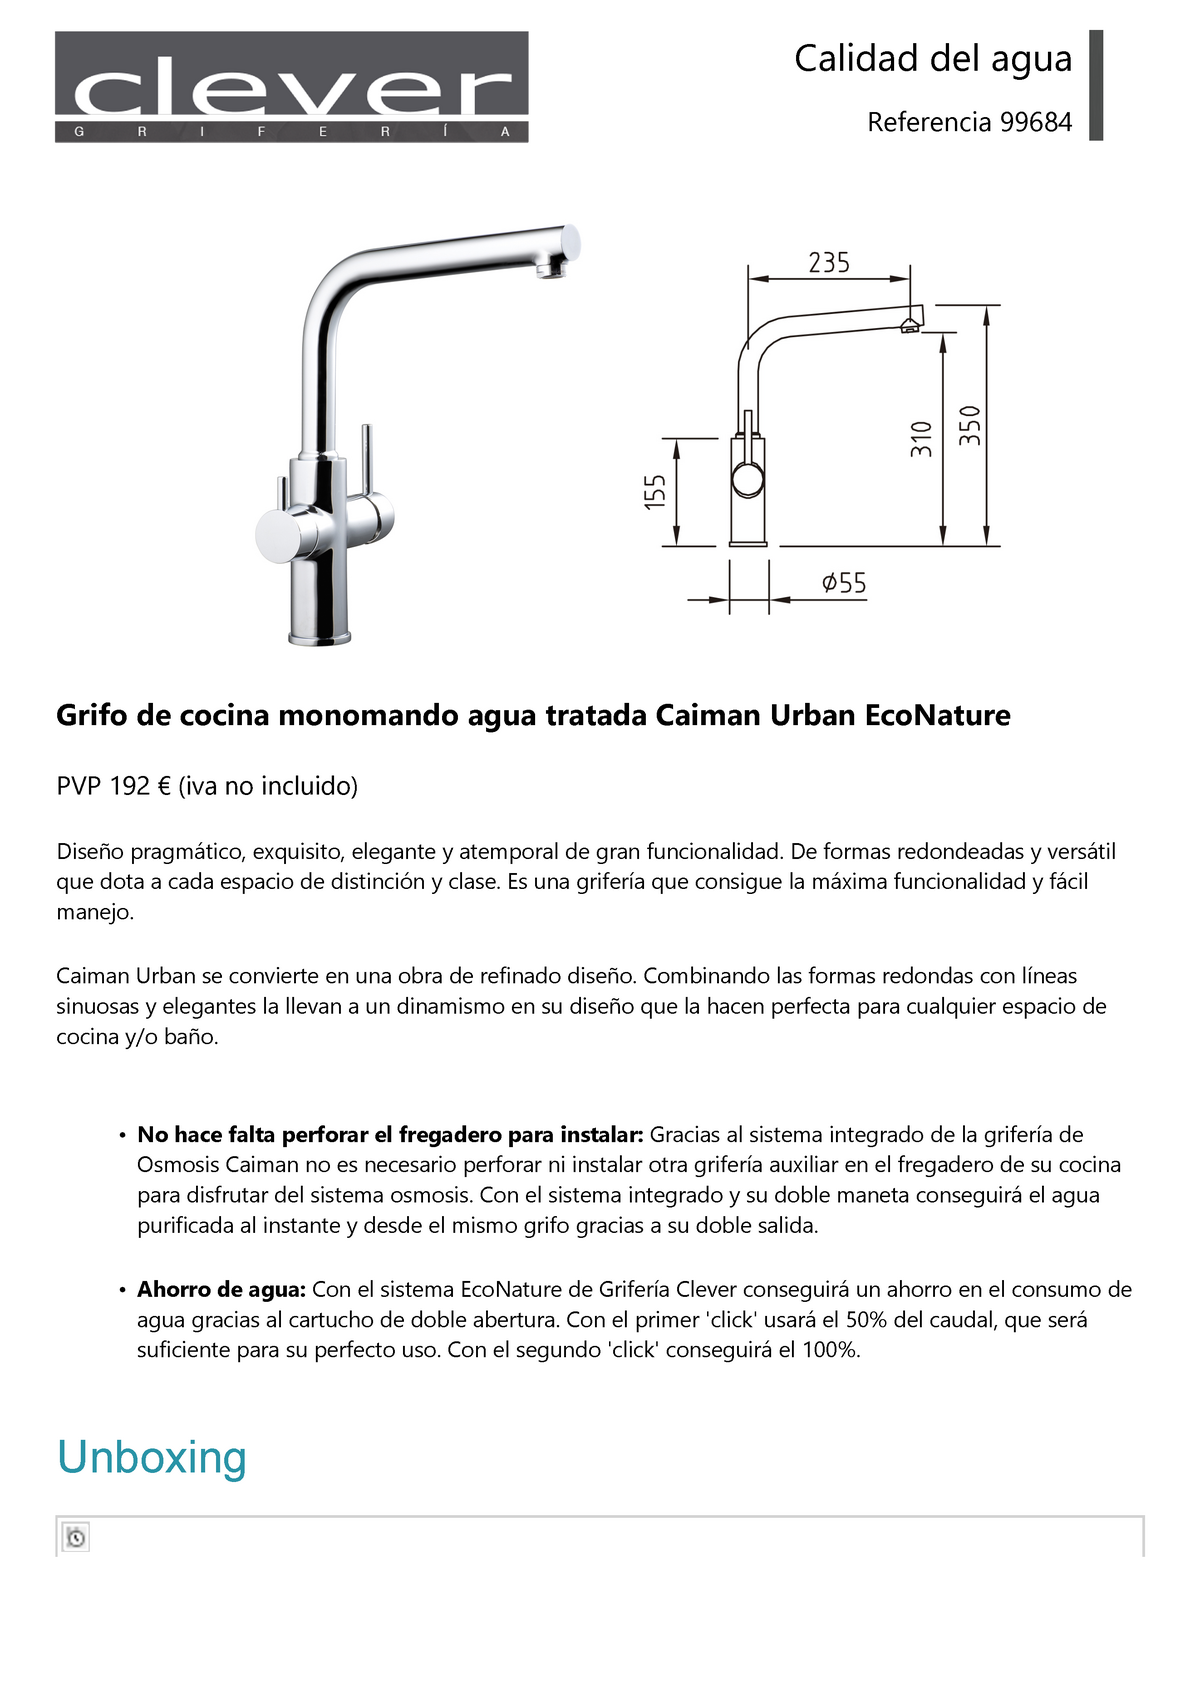 Grifo de cocina monomando agua tratada Caiman Urban EcoNature - Clever -  99684